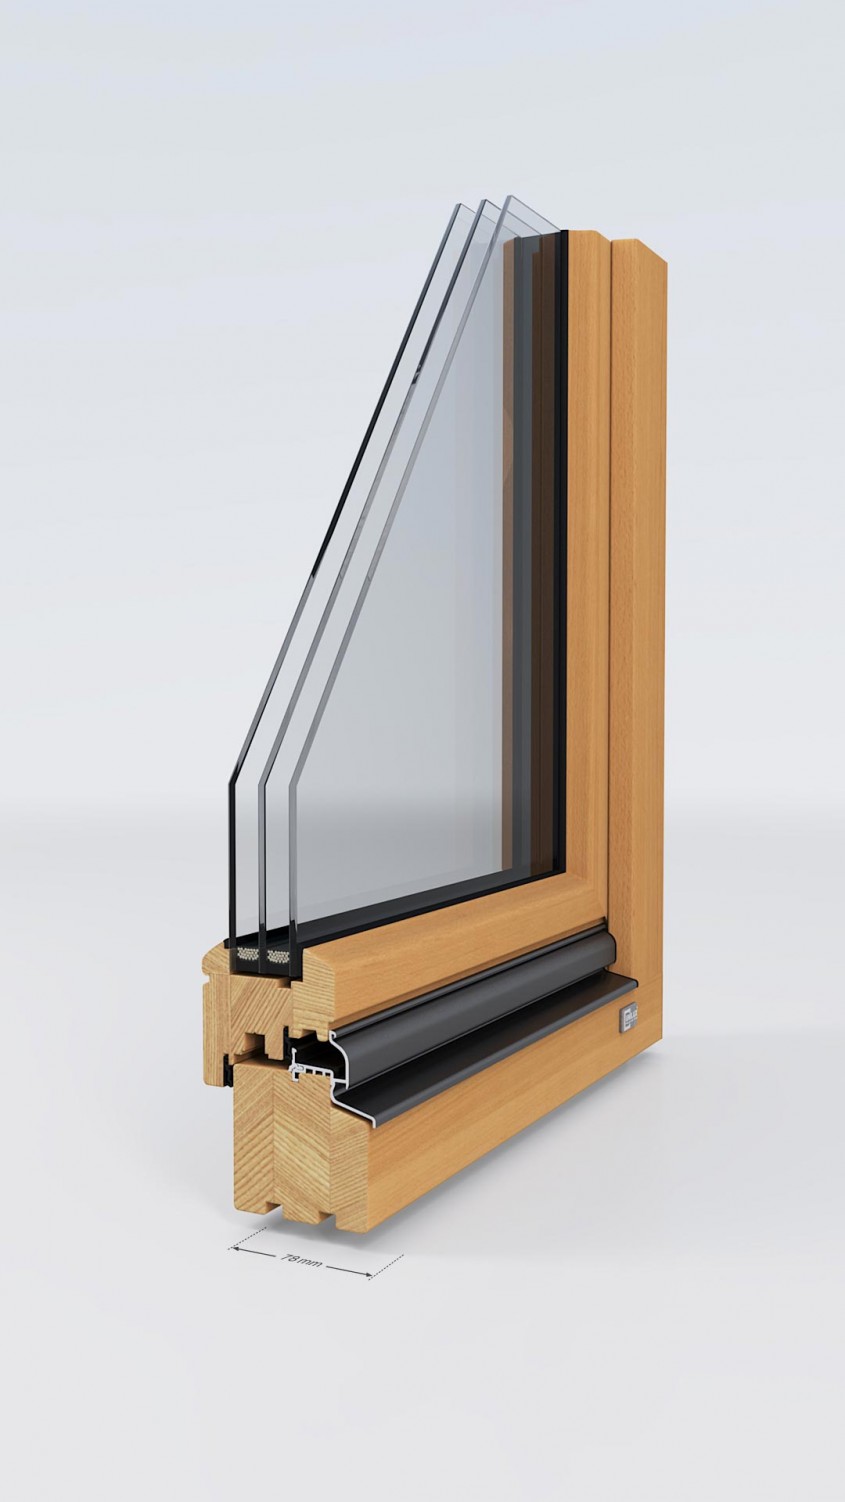 Profile din lemn stratificat pentru ferestre - Tamplaria din lemn stratificat, o alegere naturala si durabila